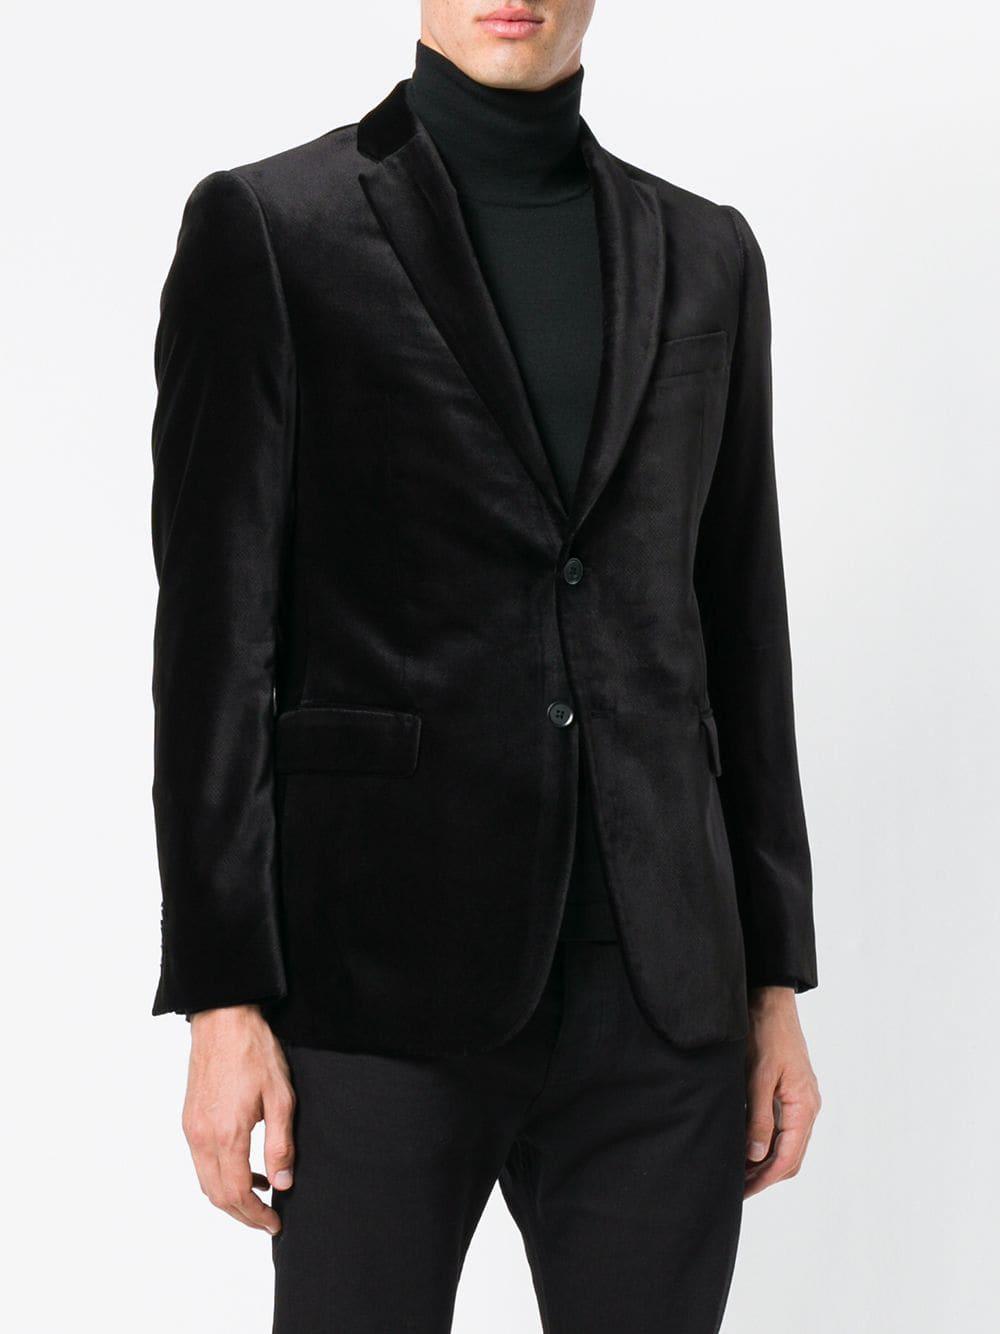 Emporio Armani Synthetic Velvet Dinner Jacket in Black for Men - Lyst